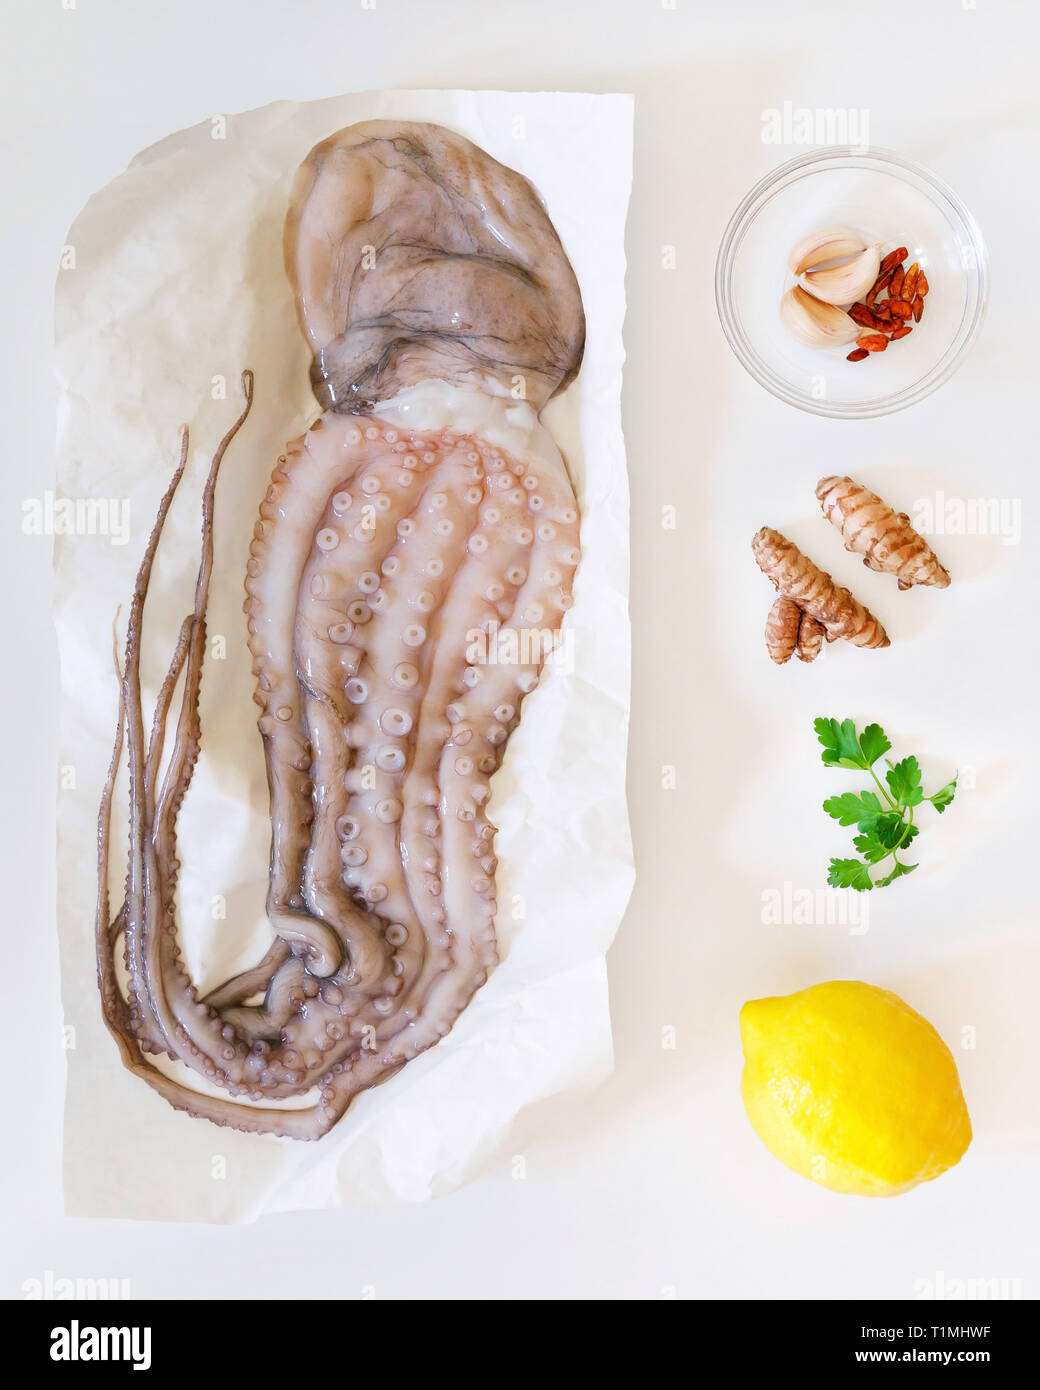 Rohen Tintenfisch mit Zutaten zum Kochen Vorbereitung. Wahre Octopus, getrockneter Chili, Kurkuma, Petersilie und Zitrone. Weißer Hintergrund, Ansicht von oben. Stockfoto